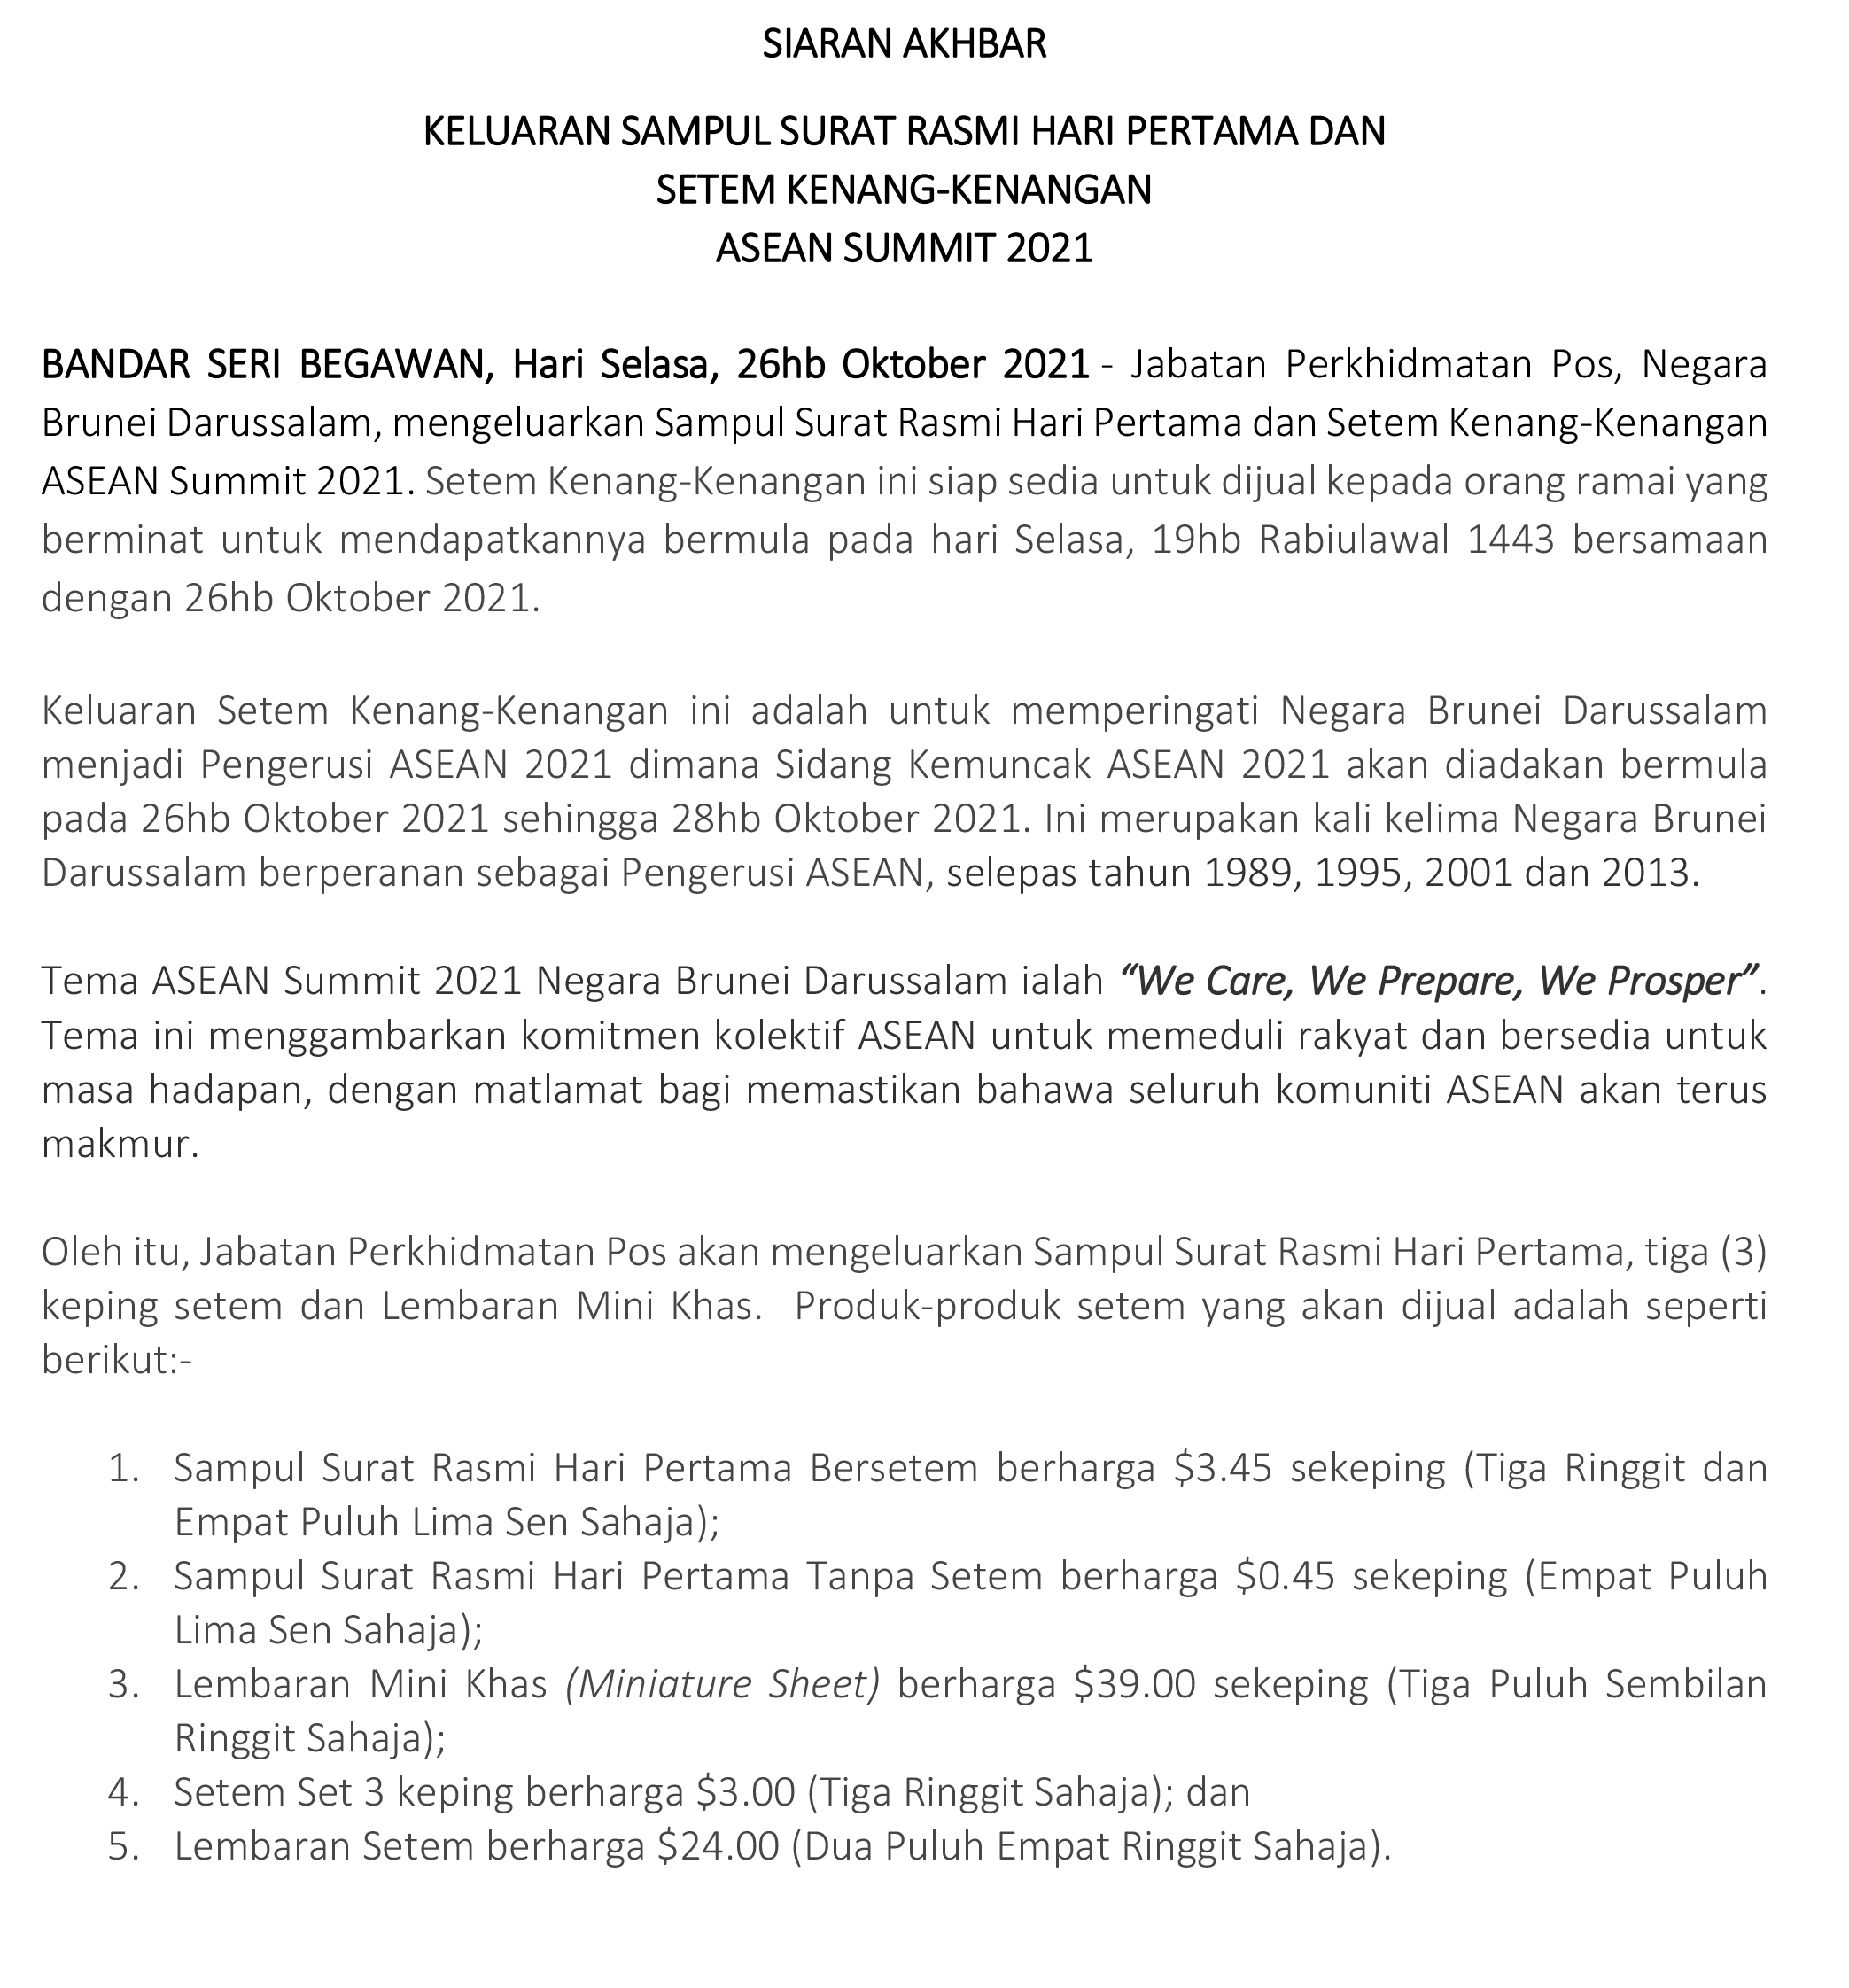 23 OKTOBER 2021 KELUARAN SAMPUL SURAT RASMI HARI PERTAMA DAN SETEM KENANG ASEAN SUMMIT.edited 23102021 8.36pm-1 1.png